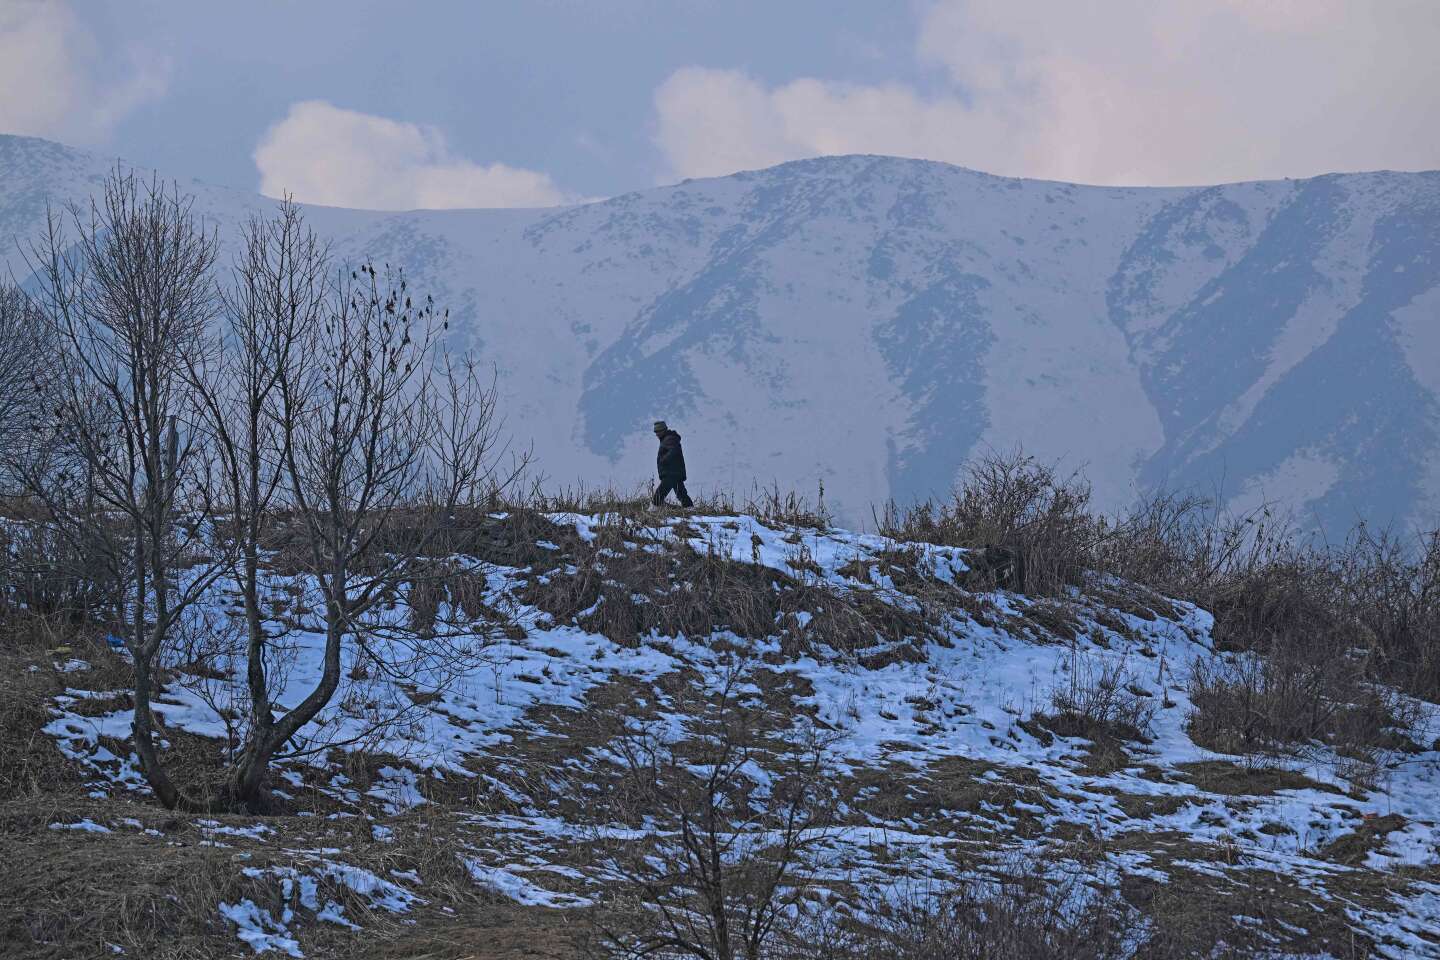 Le Cachemire subit une pénurie de neige en raison du changement climatique